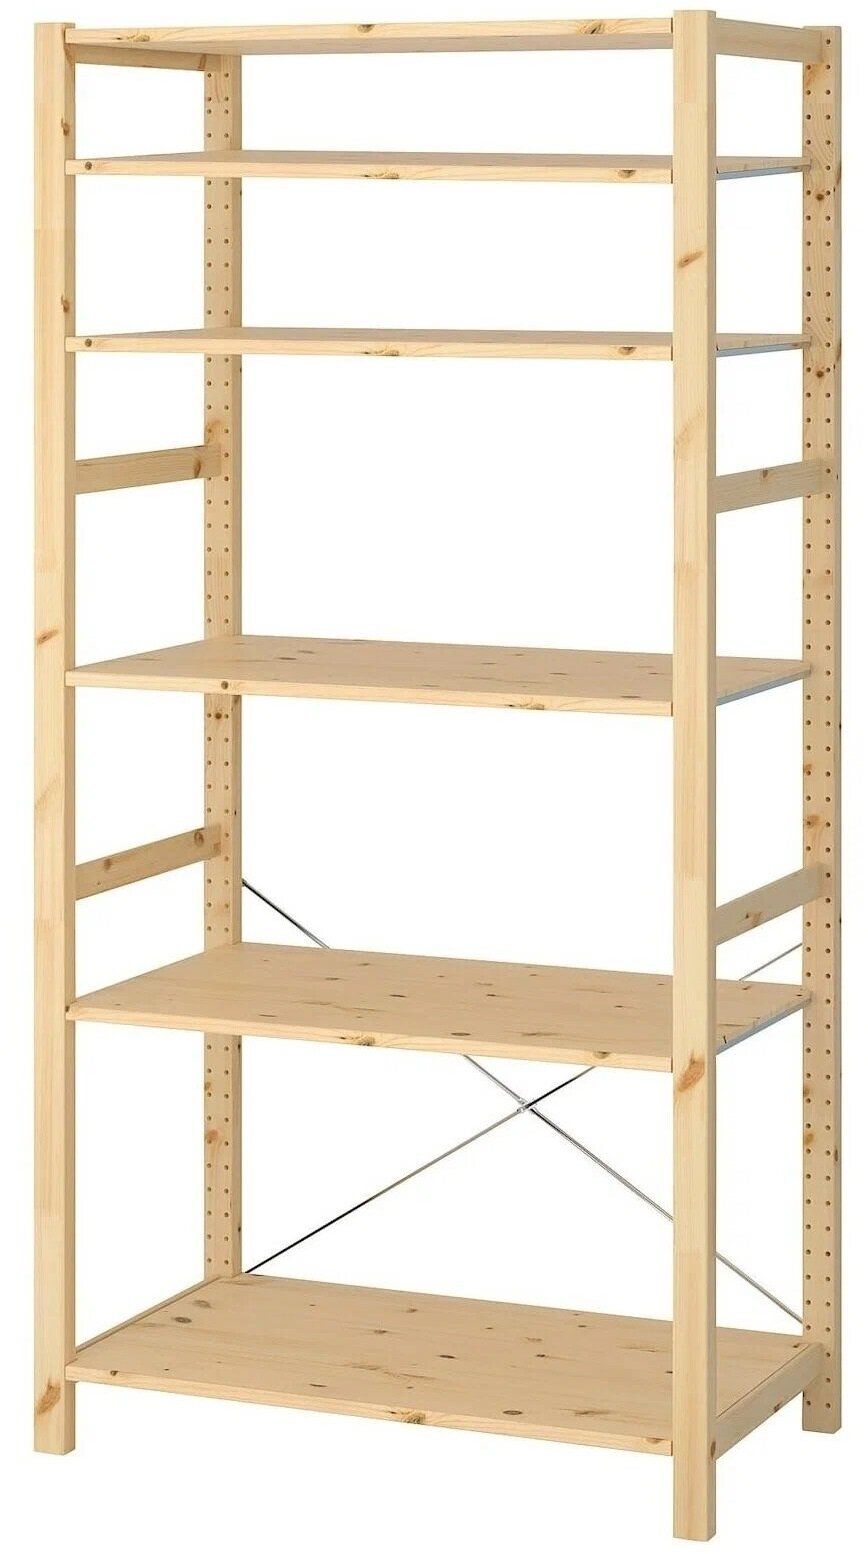 Стеллаж деревянный напольный с 6 полками открытого типа IKEA Ivar(высота 226 см, ширина 89 см, глубина 30 см), 226*30*89 см Икеа Ивар